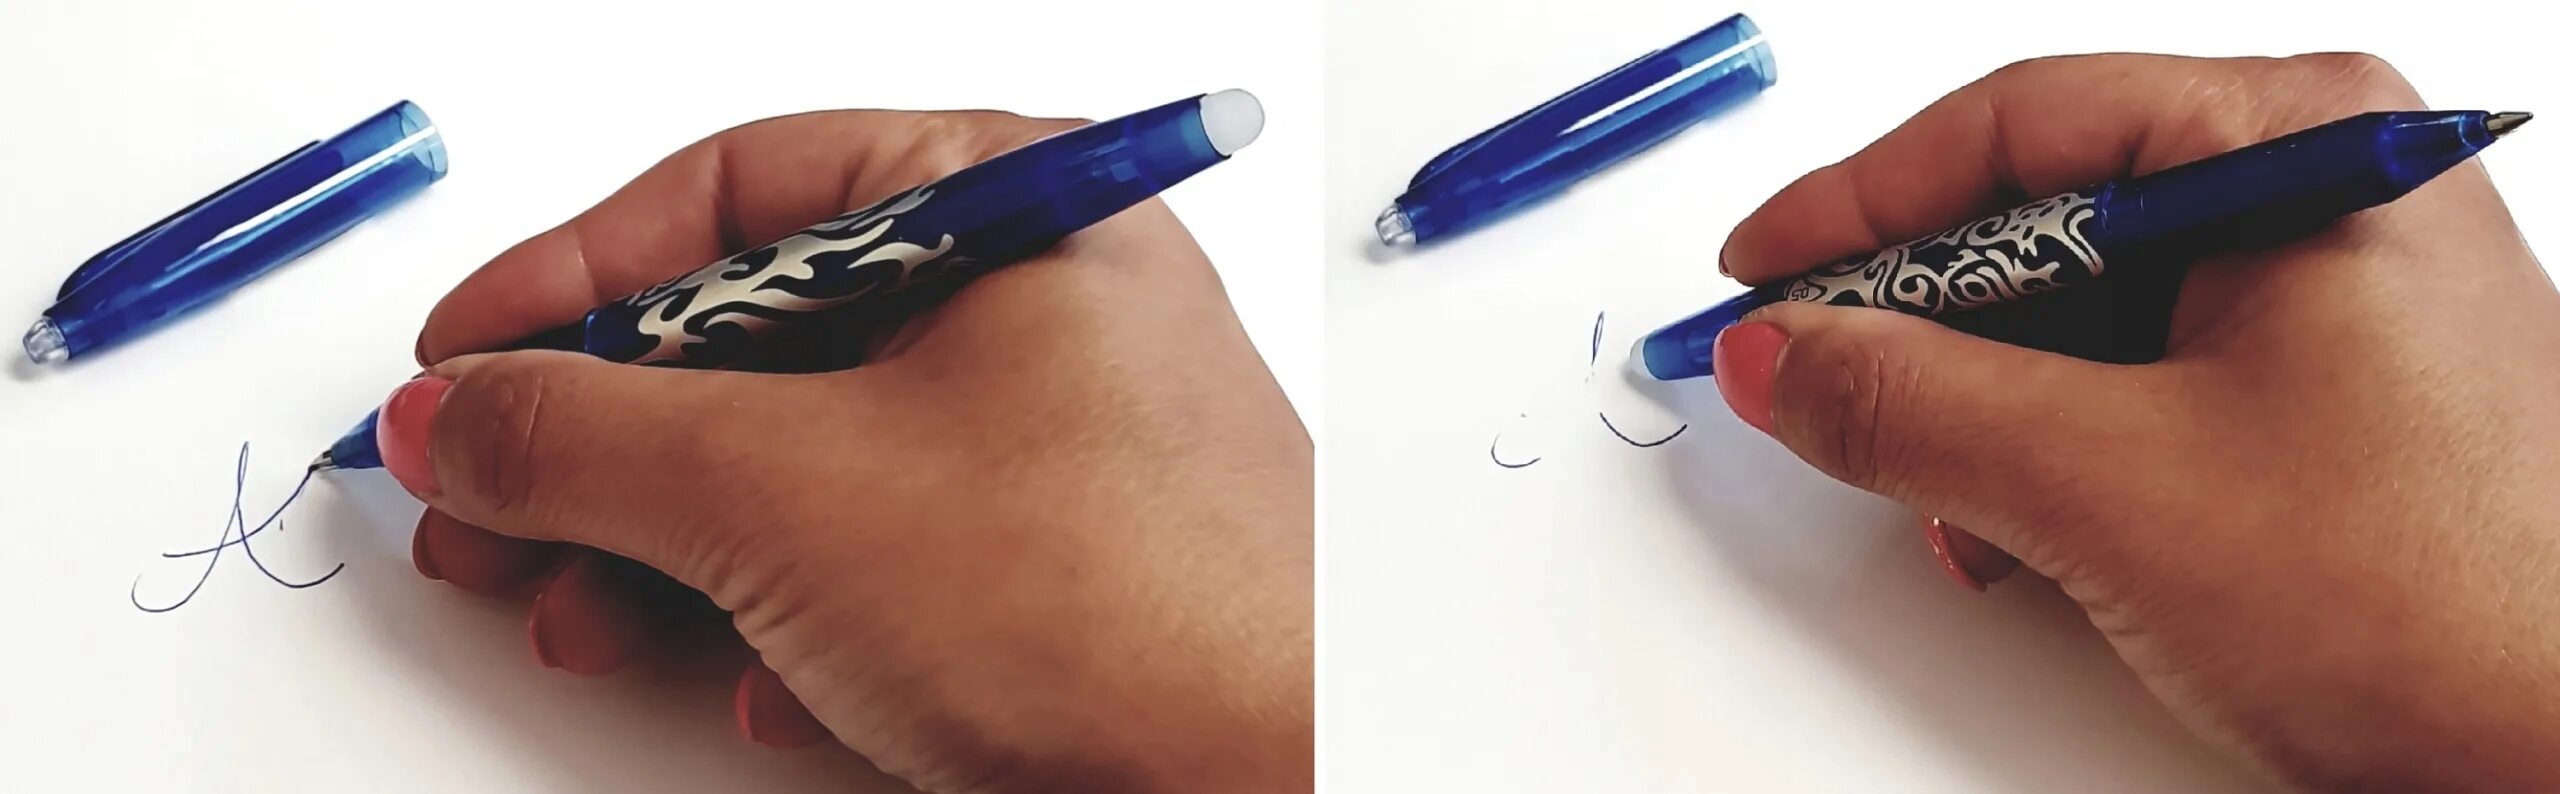 Растекается разбор. Ручка стирающаяся ластиком. Ручка с резинкой для стирания. Ручка с ластиком шариковая ручка. Ручка стерка шариковая.